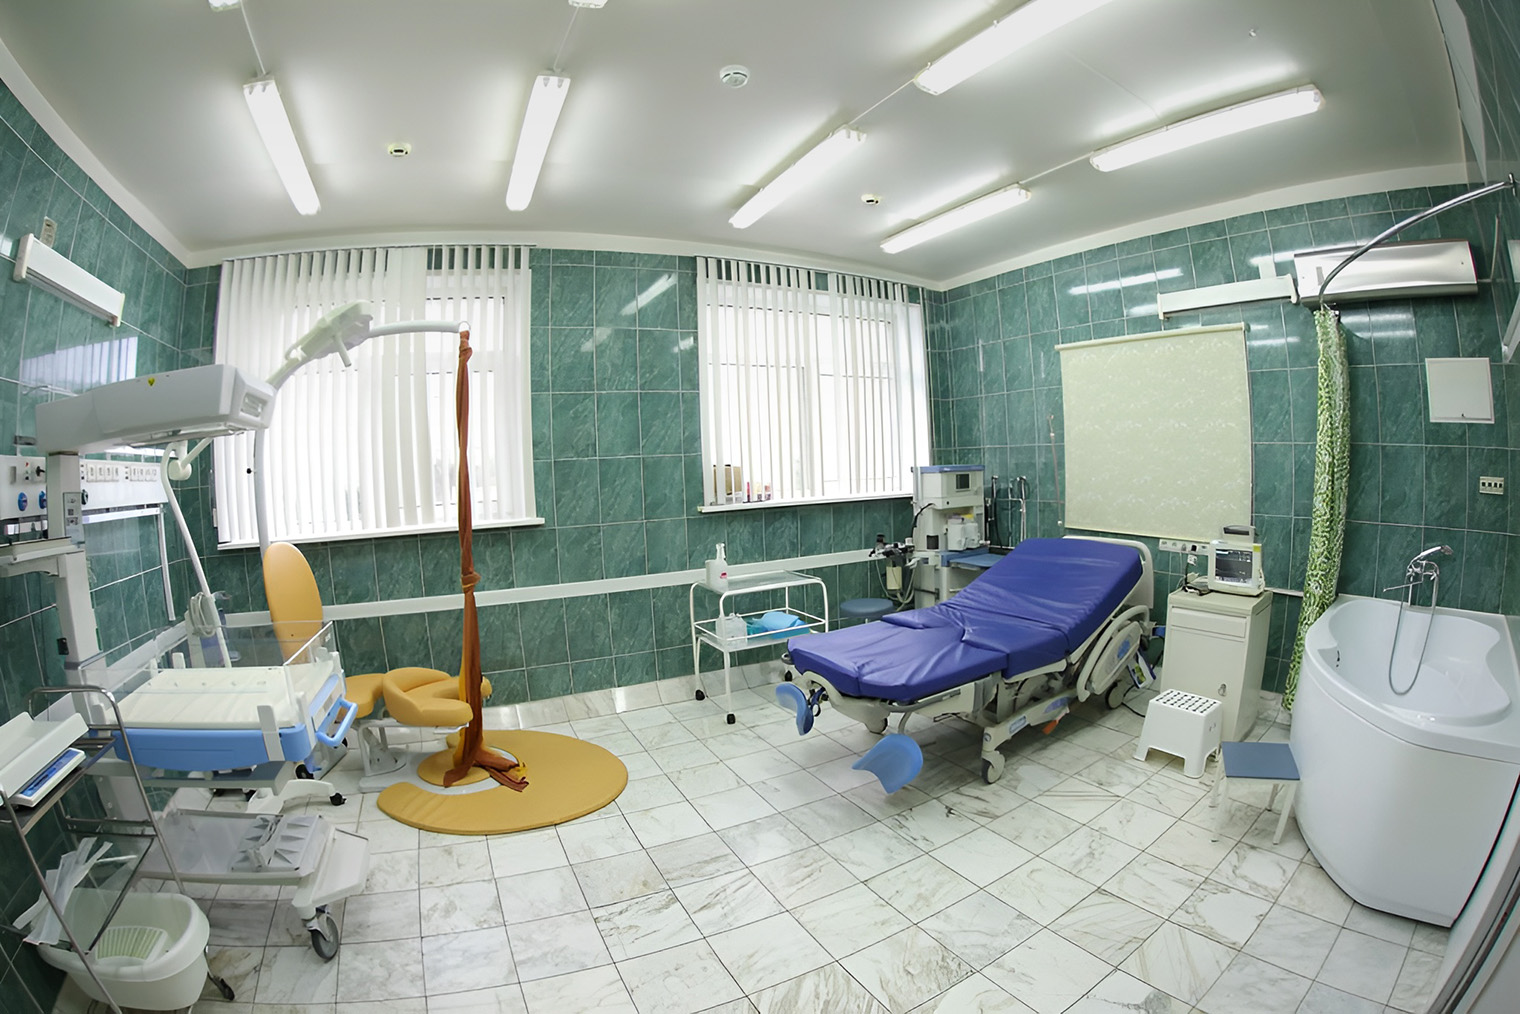 Родильный зал с ванной в московском роддоме № 17. Источник: roddom17msk.ru